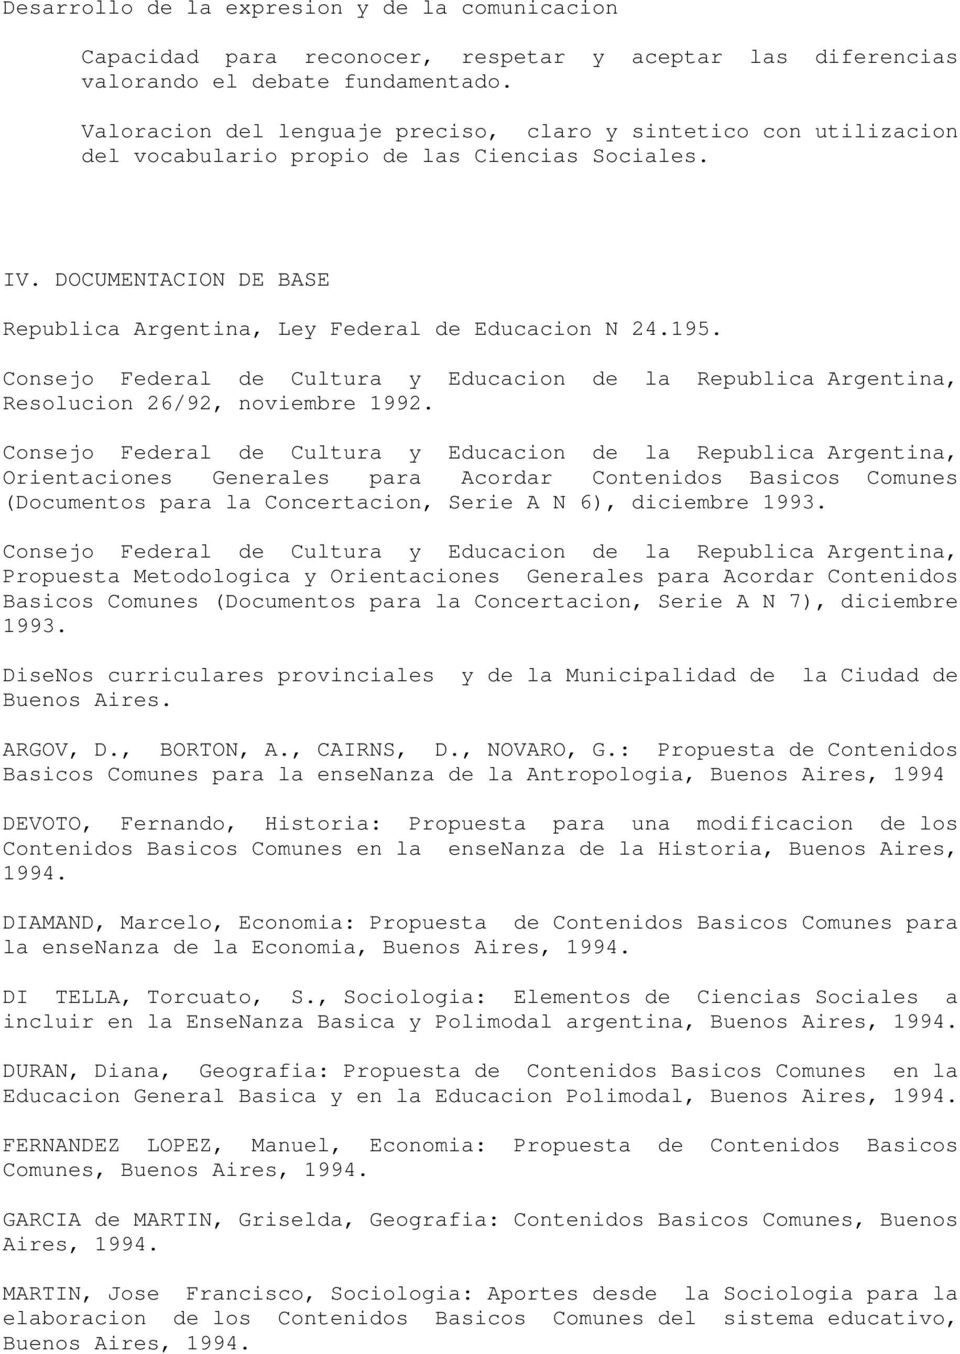 Consejo Federal de Cultura y Educacion de la Republica Argentina, Resolucion 26/92, noviembre 1992.